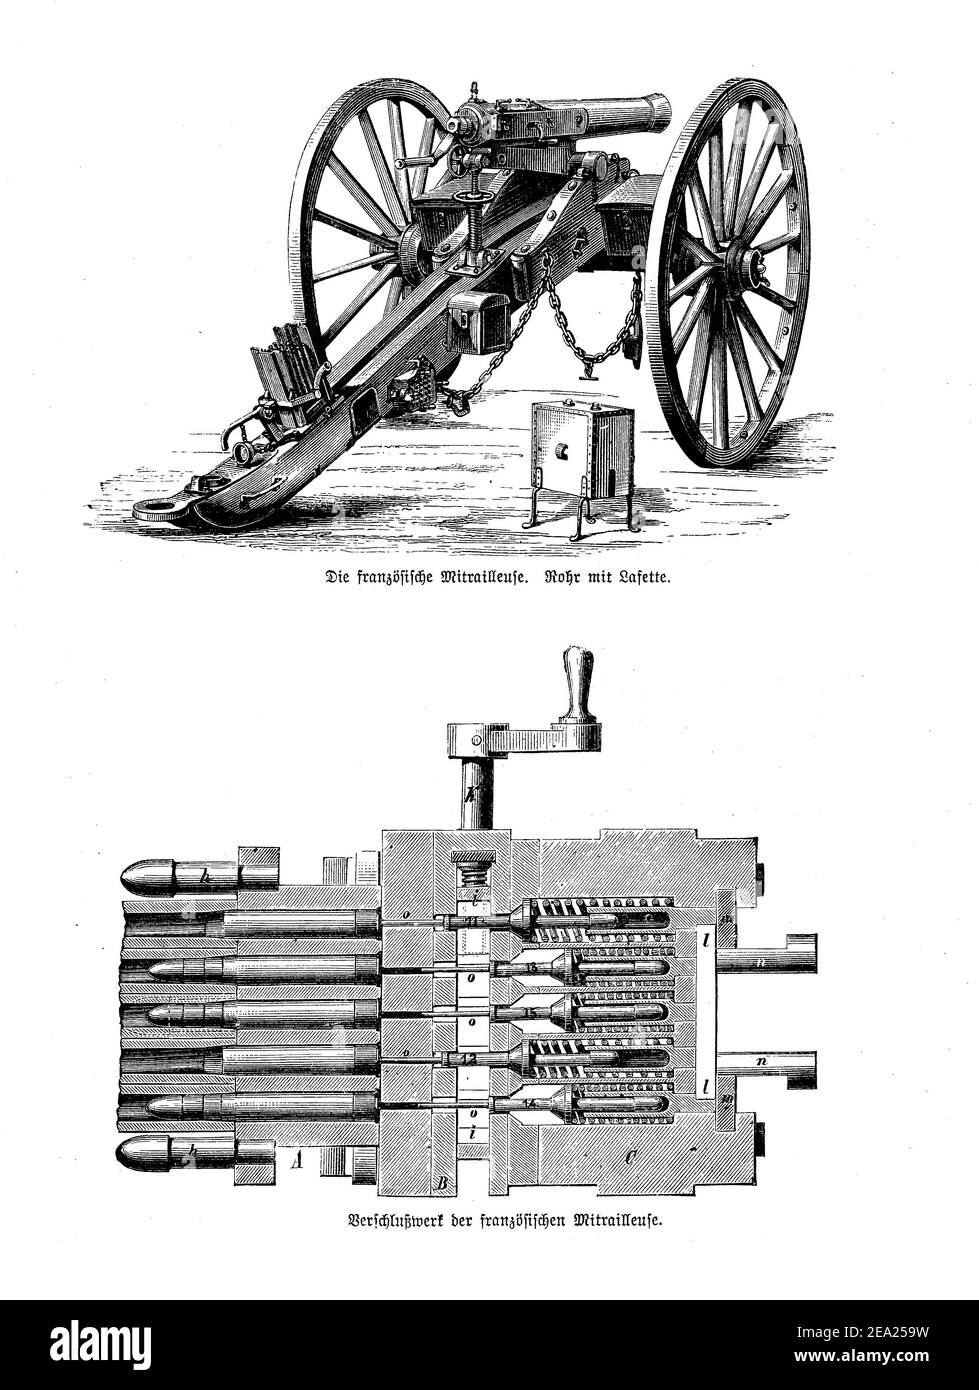 Mitileuse française, mitrailleuse montée sur châssis lafette, avec détail du magasin de cartouches et du mécanisme de chargement, fin du XIXe siècle Banque D'Images